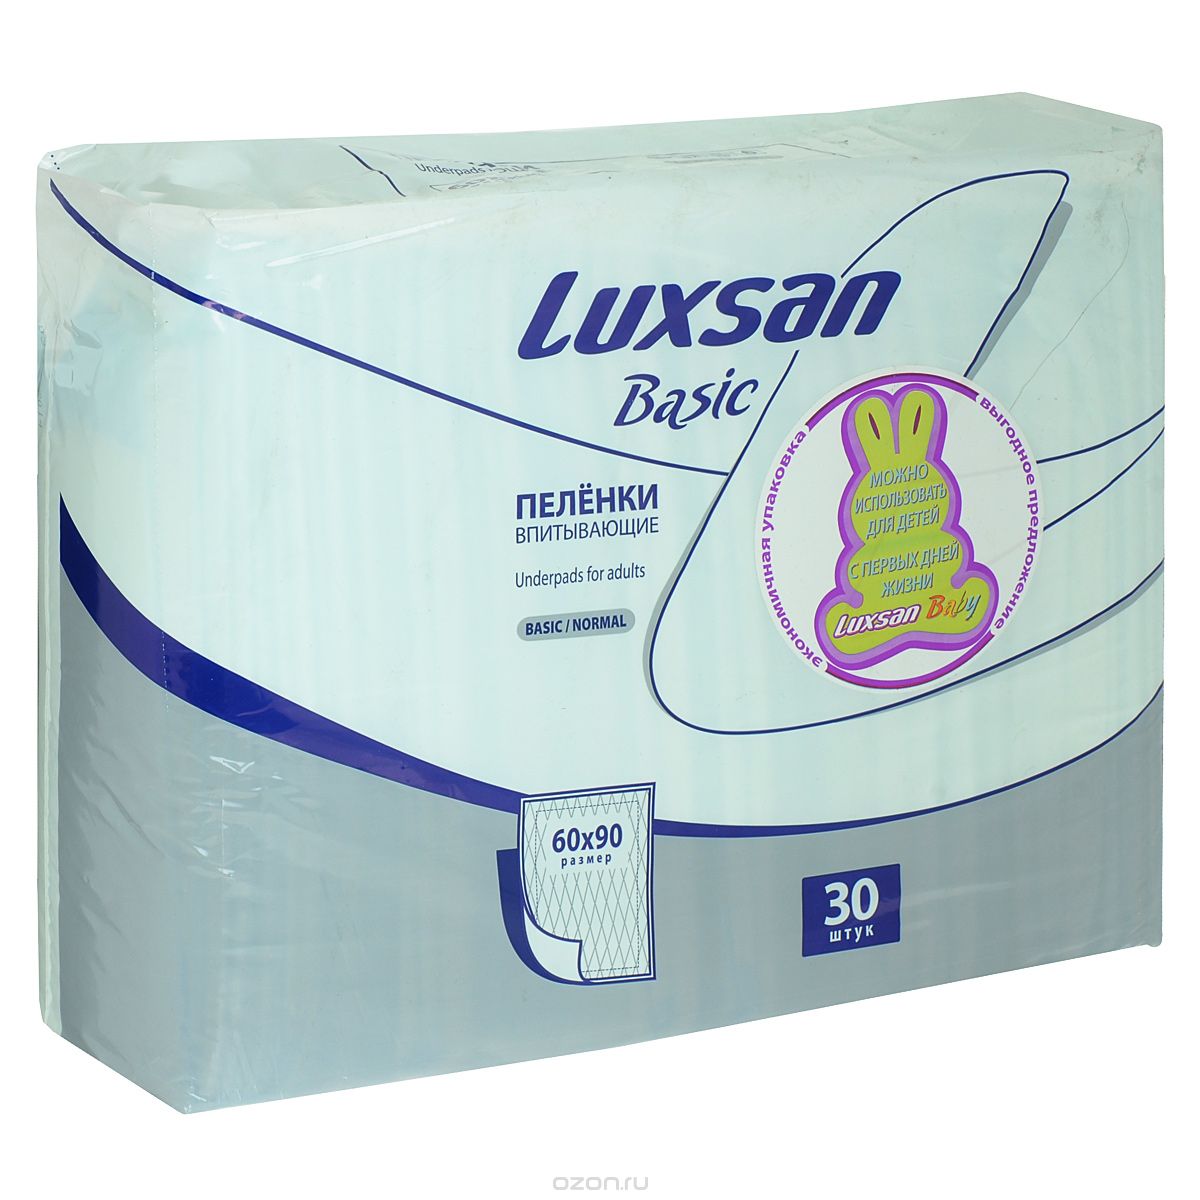 Пеленки впитывающие одноразовые Luxsan Basic/Normal (60 x 90 см) - 30 шт